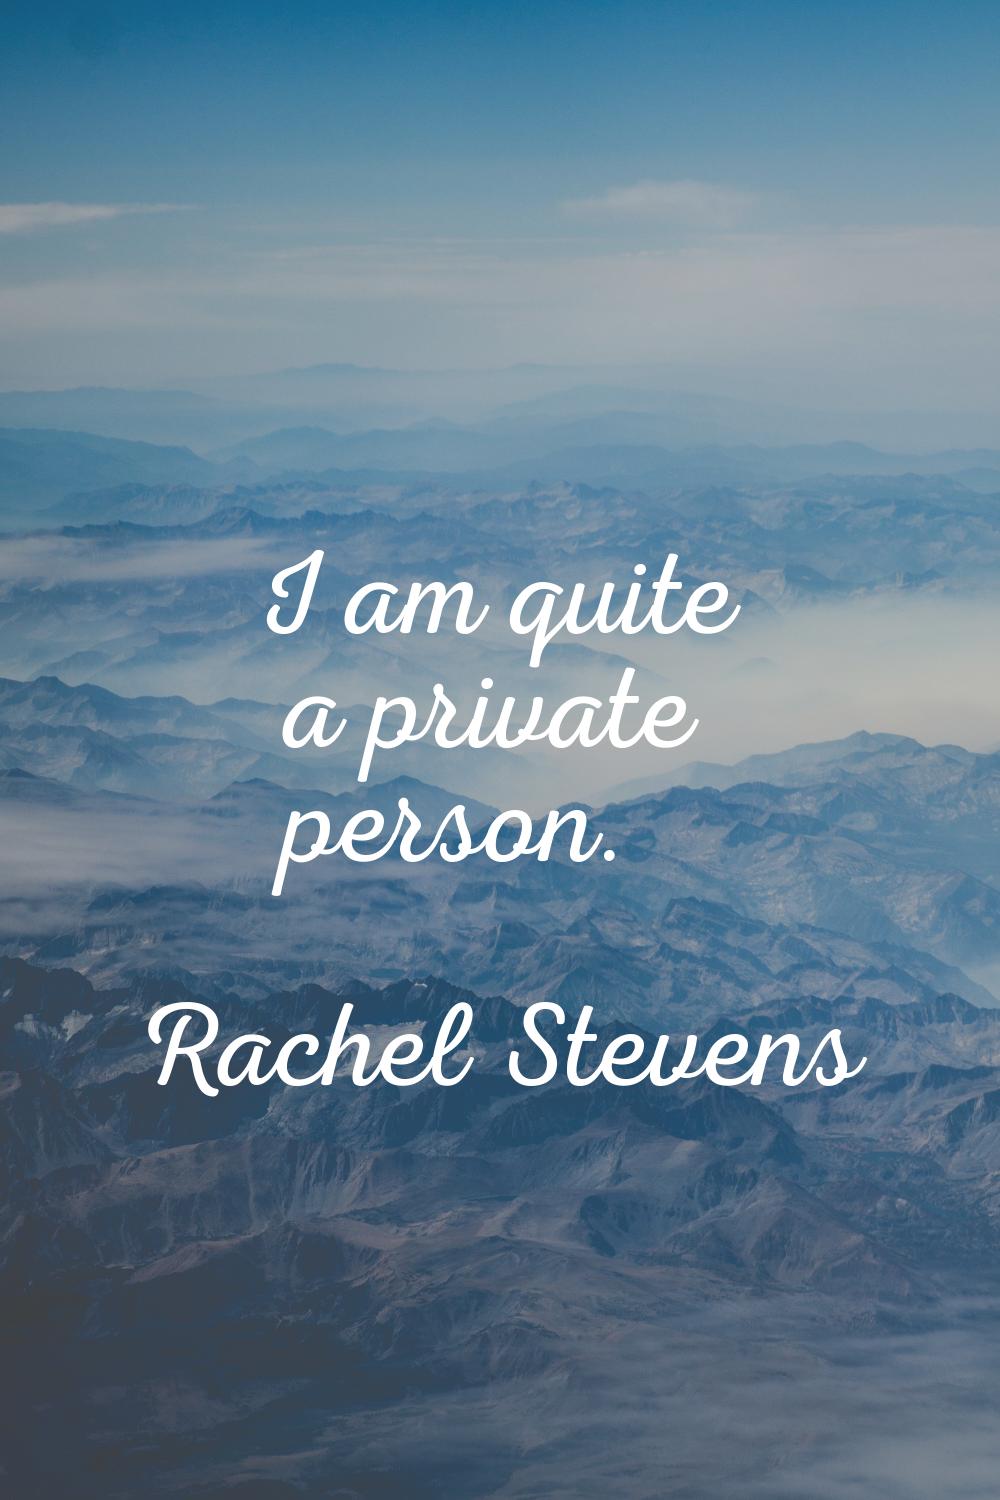 I am quite a private person.